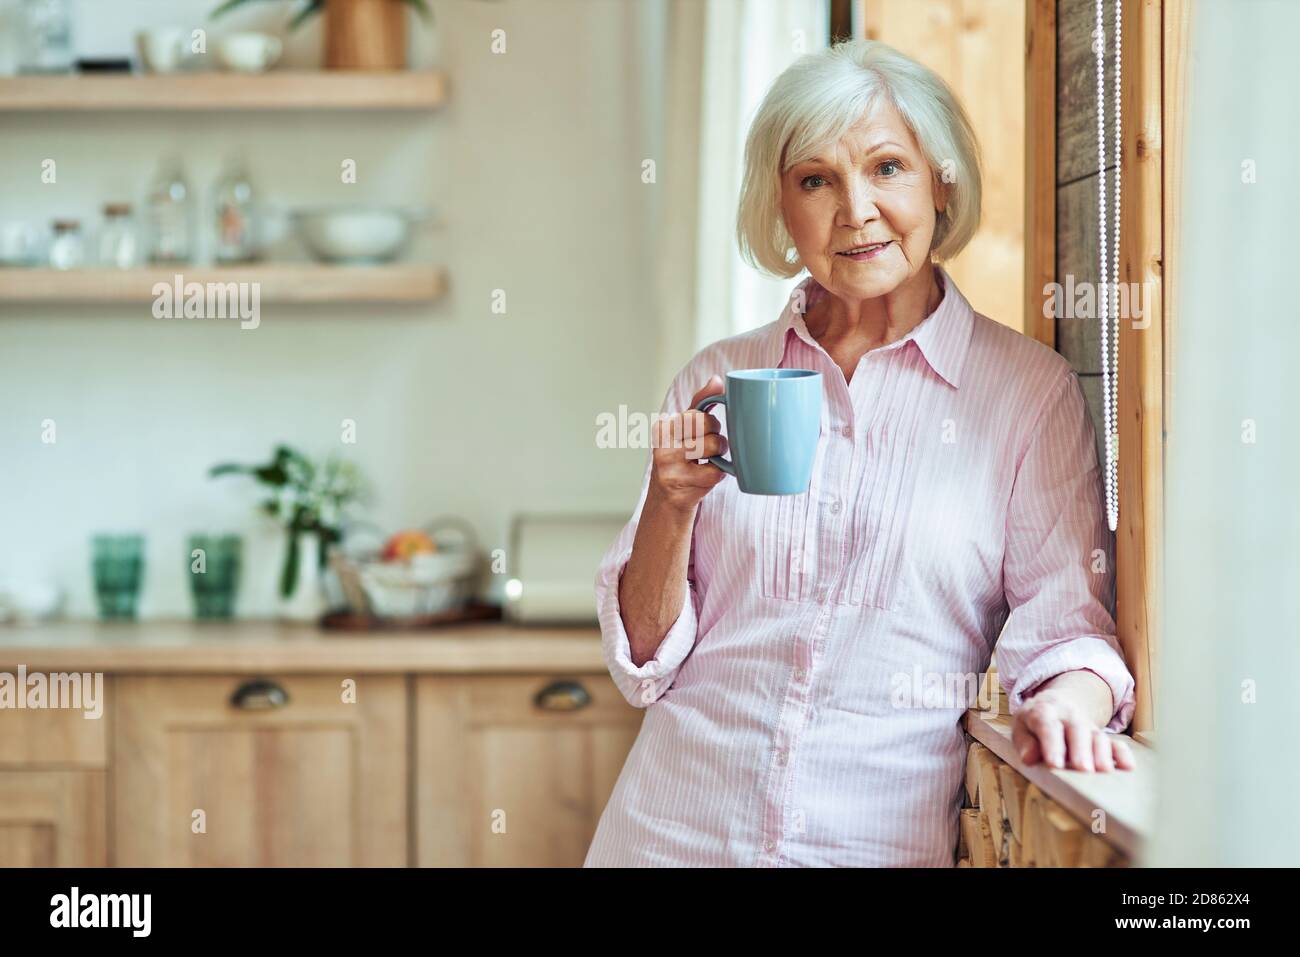 À la taille d'une femme élégante et souriante aux cheveux gris, debout près de la fenêtre et tenant une tasse de café dans la cuisine. Concept de style de vie domestique Banque D'Images